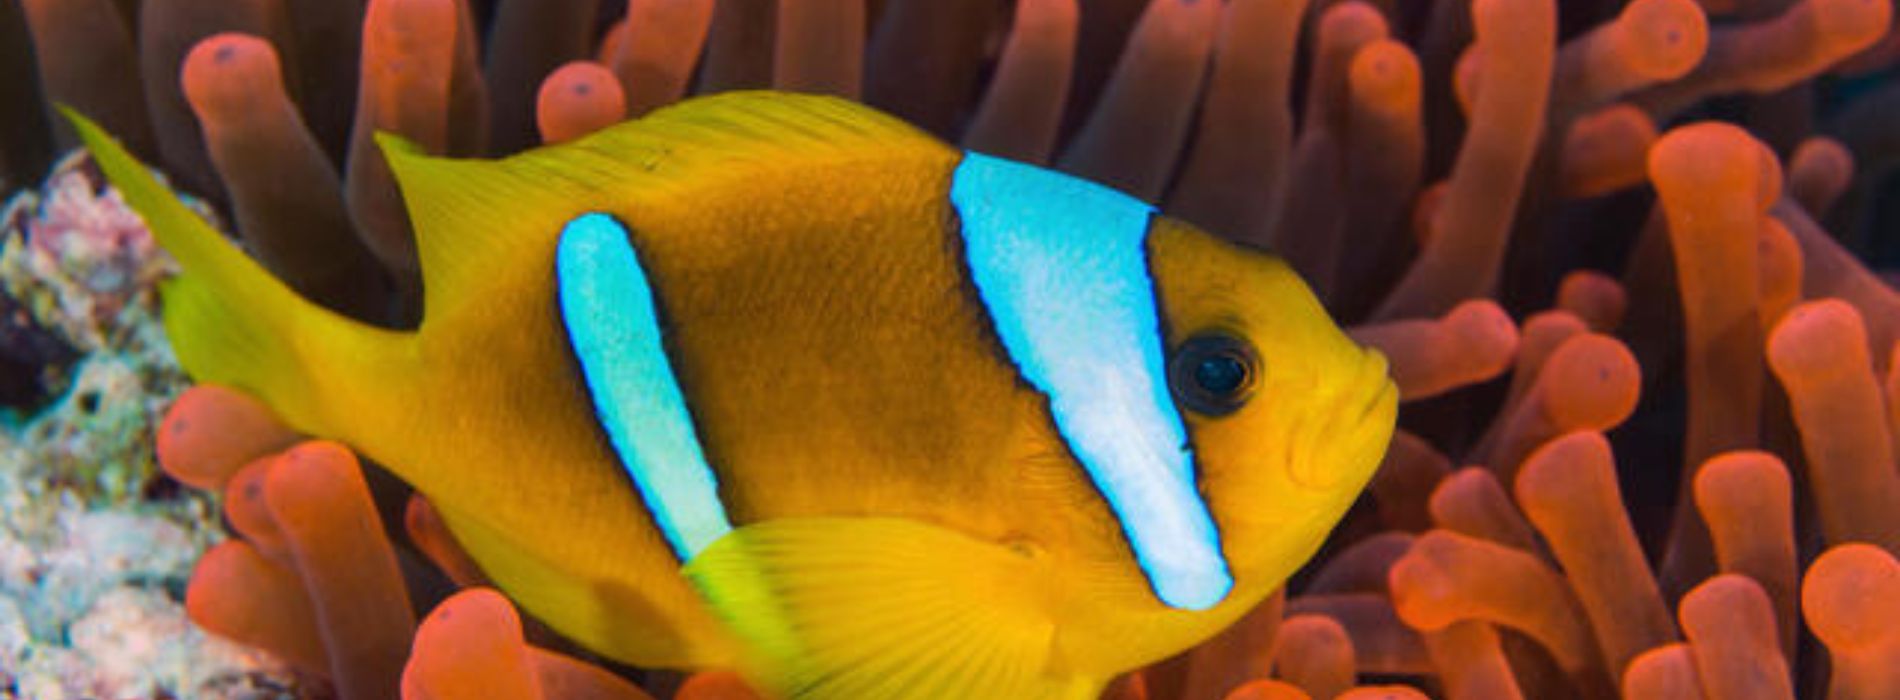 pez-payaso-del-mar-rojo-nadando-en-anémonas